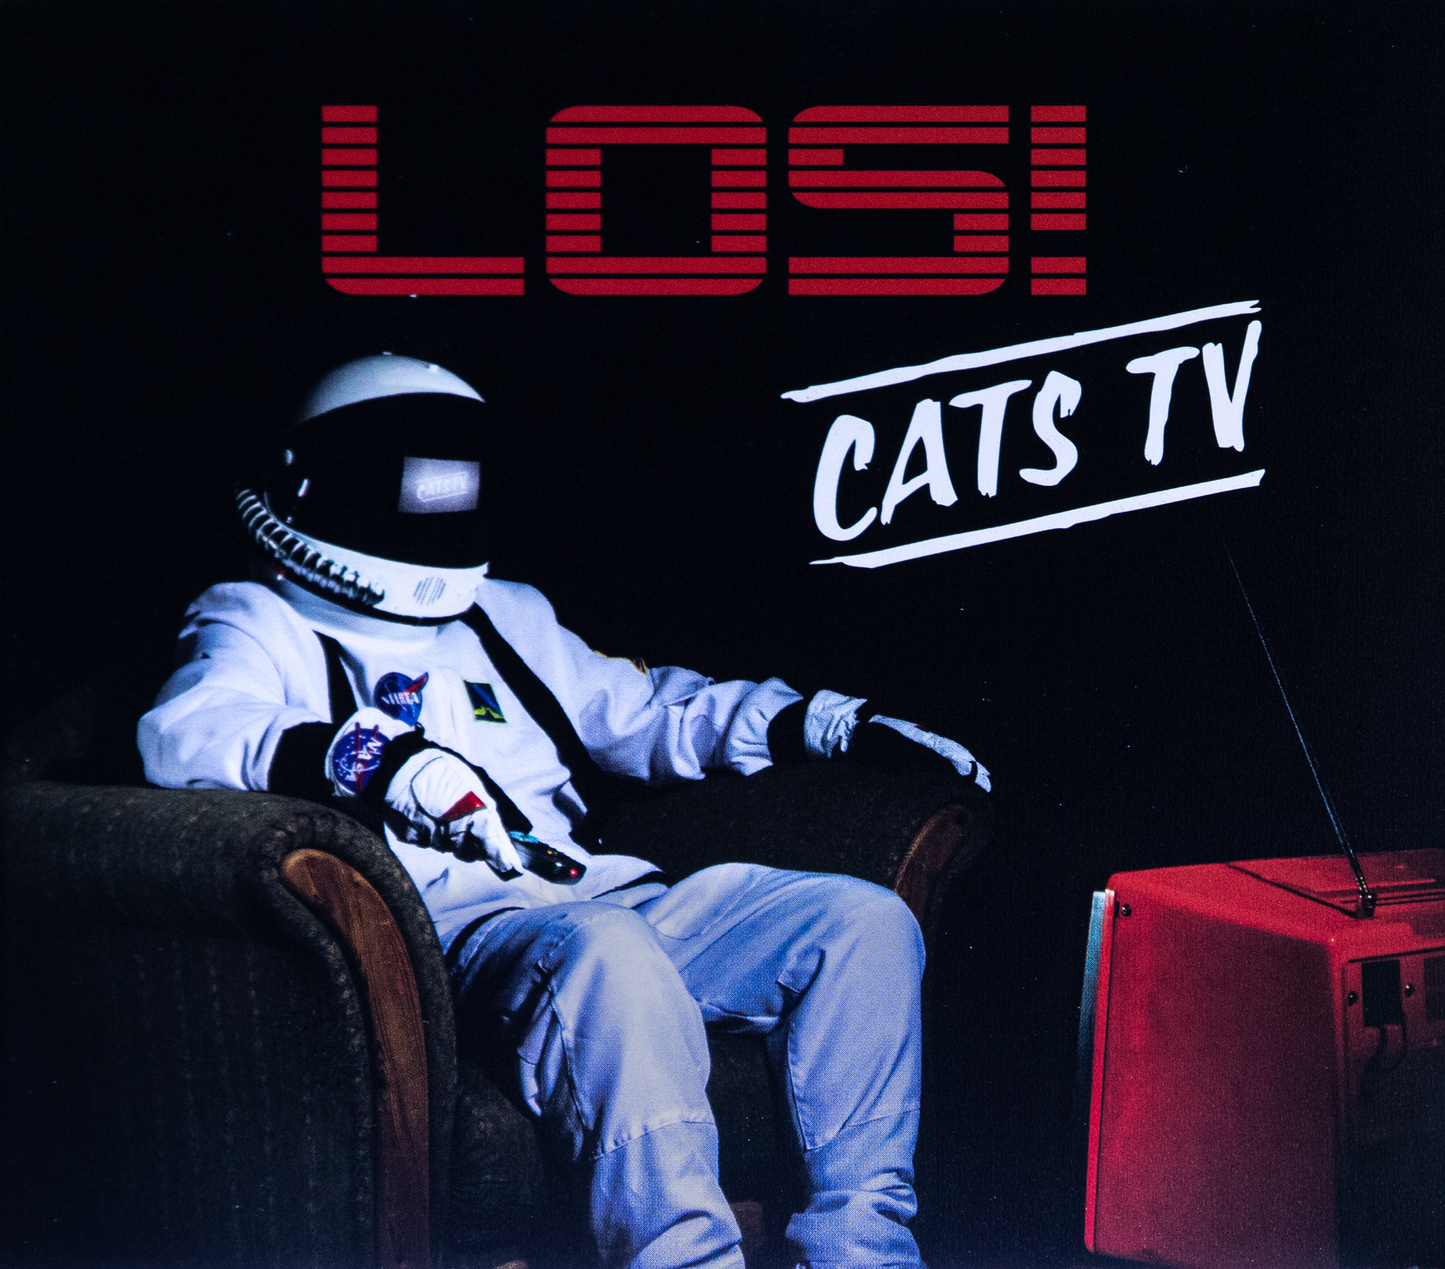 Cats TV - Los! CD